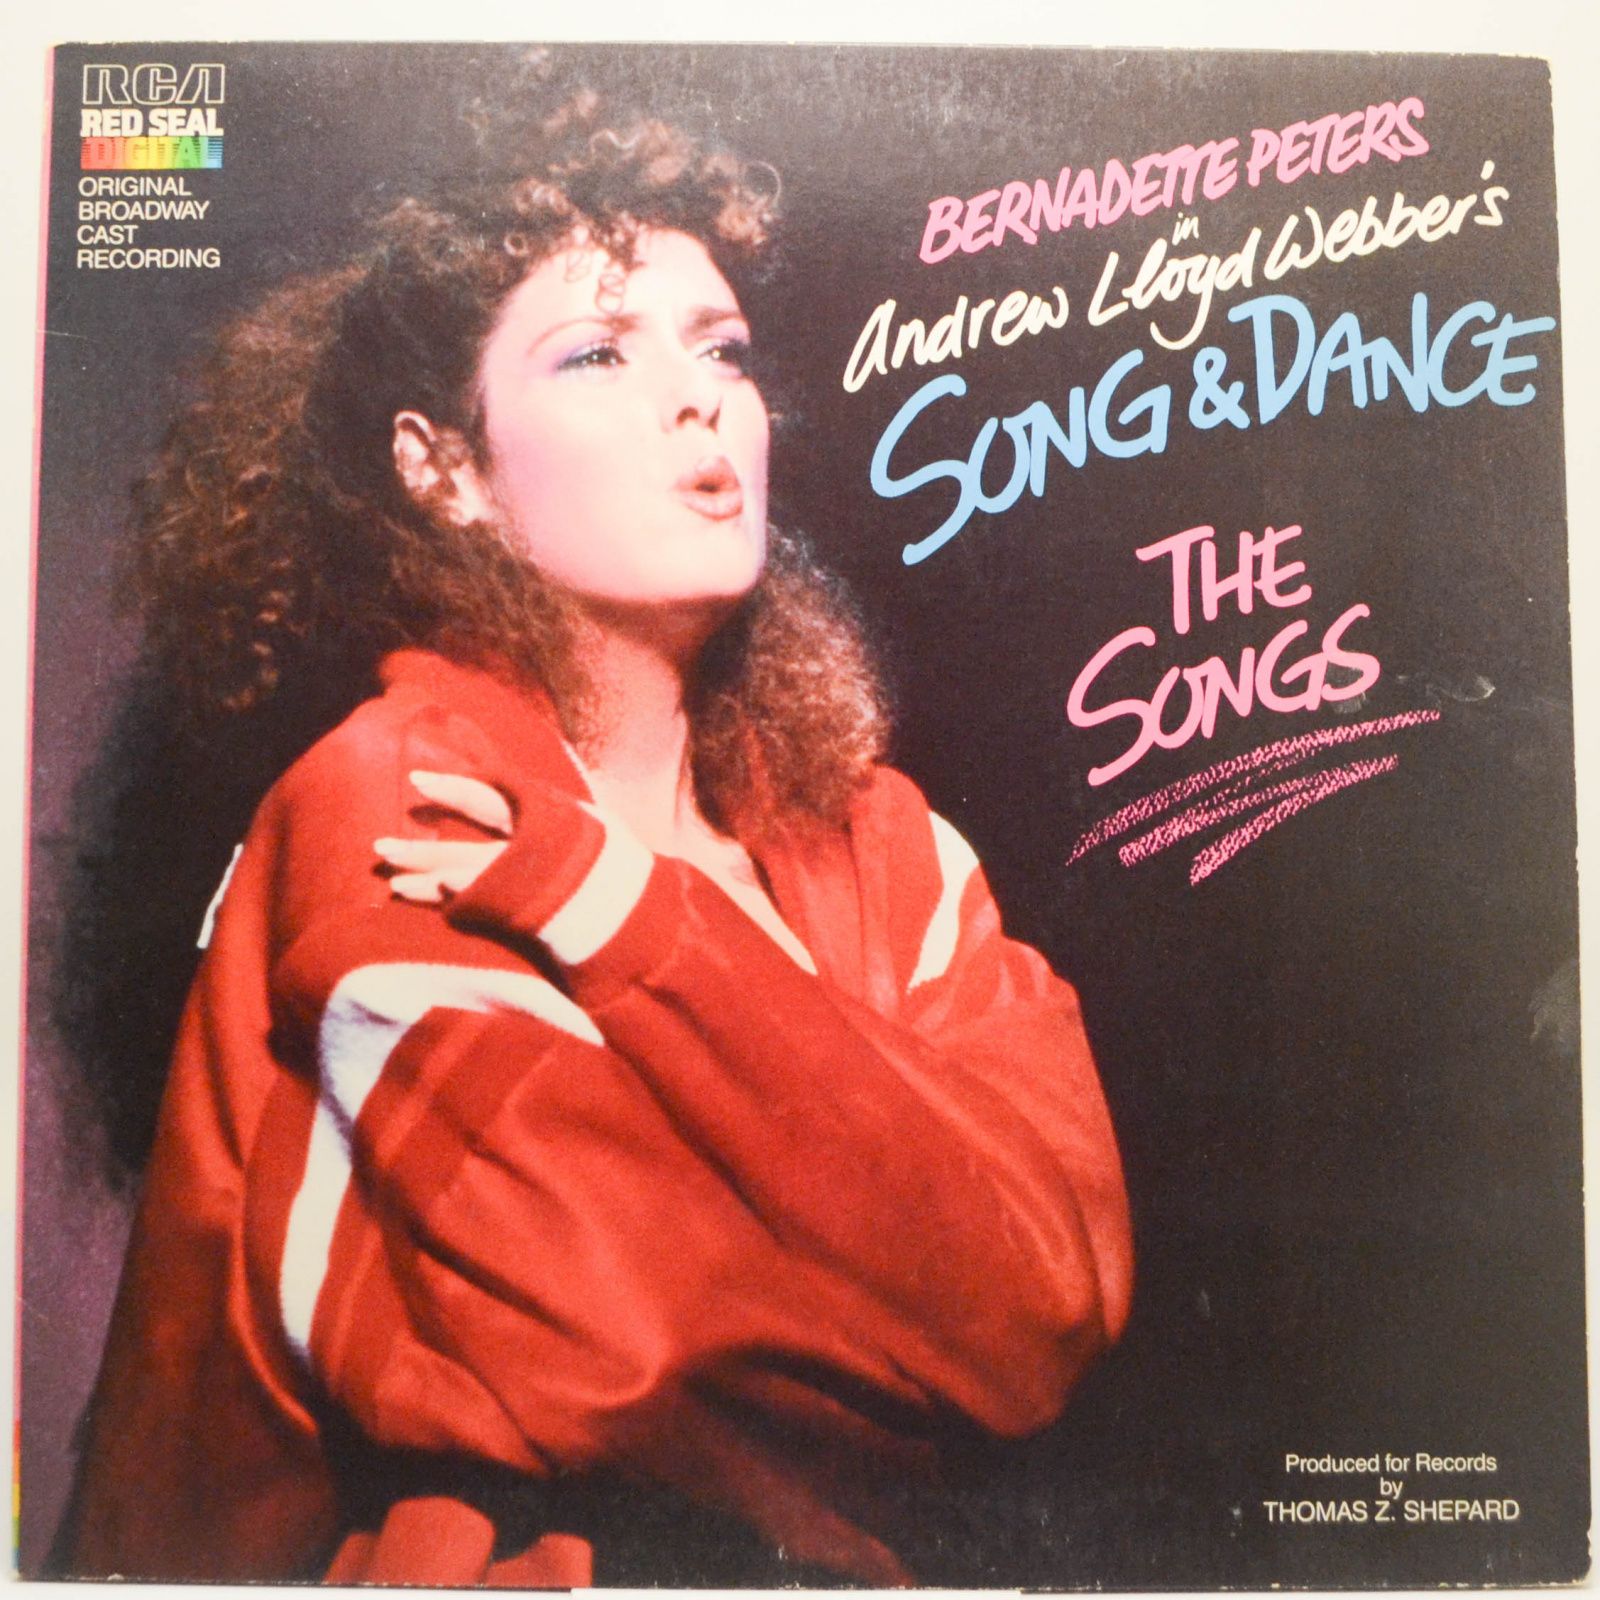 Bernadette Peters — Song & Dance, 1985